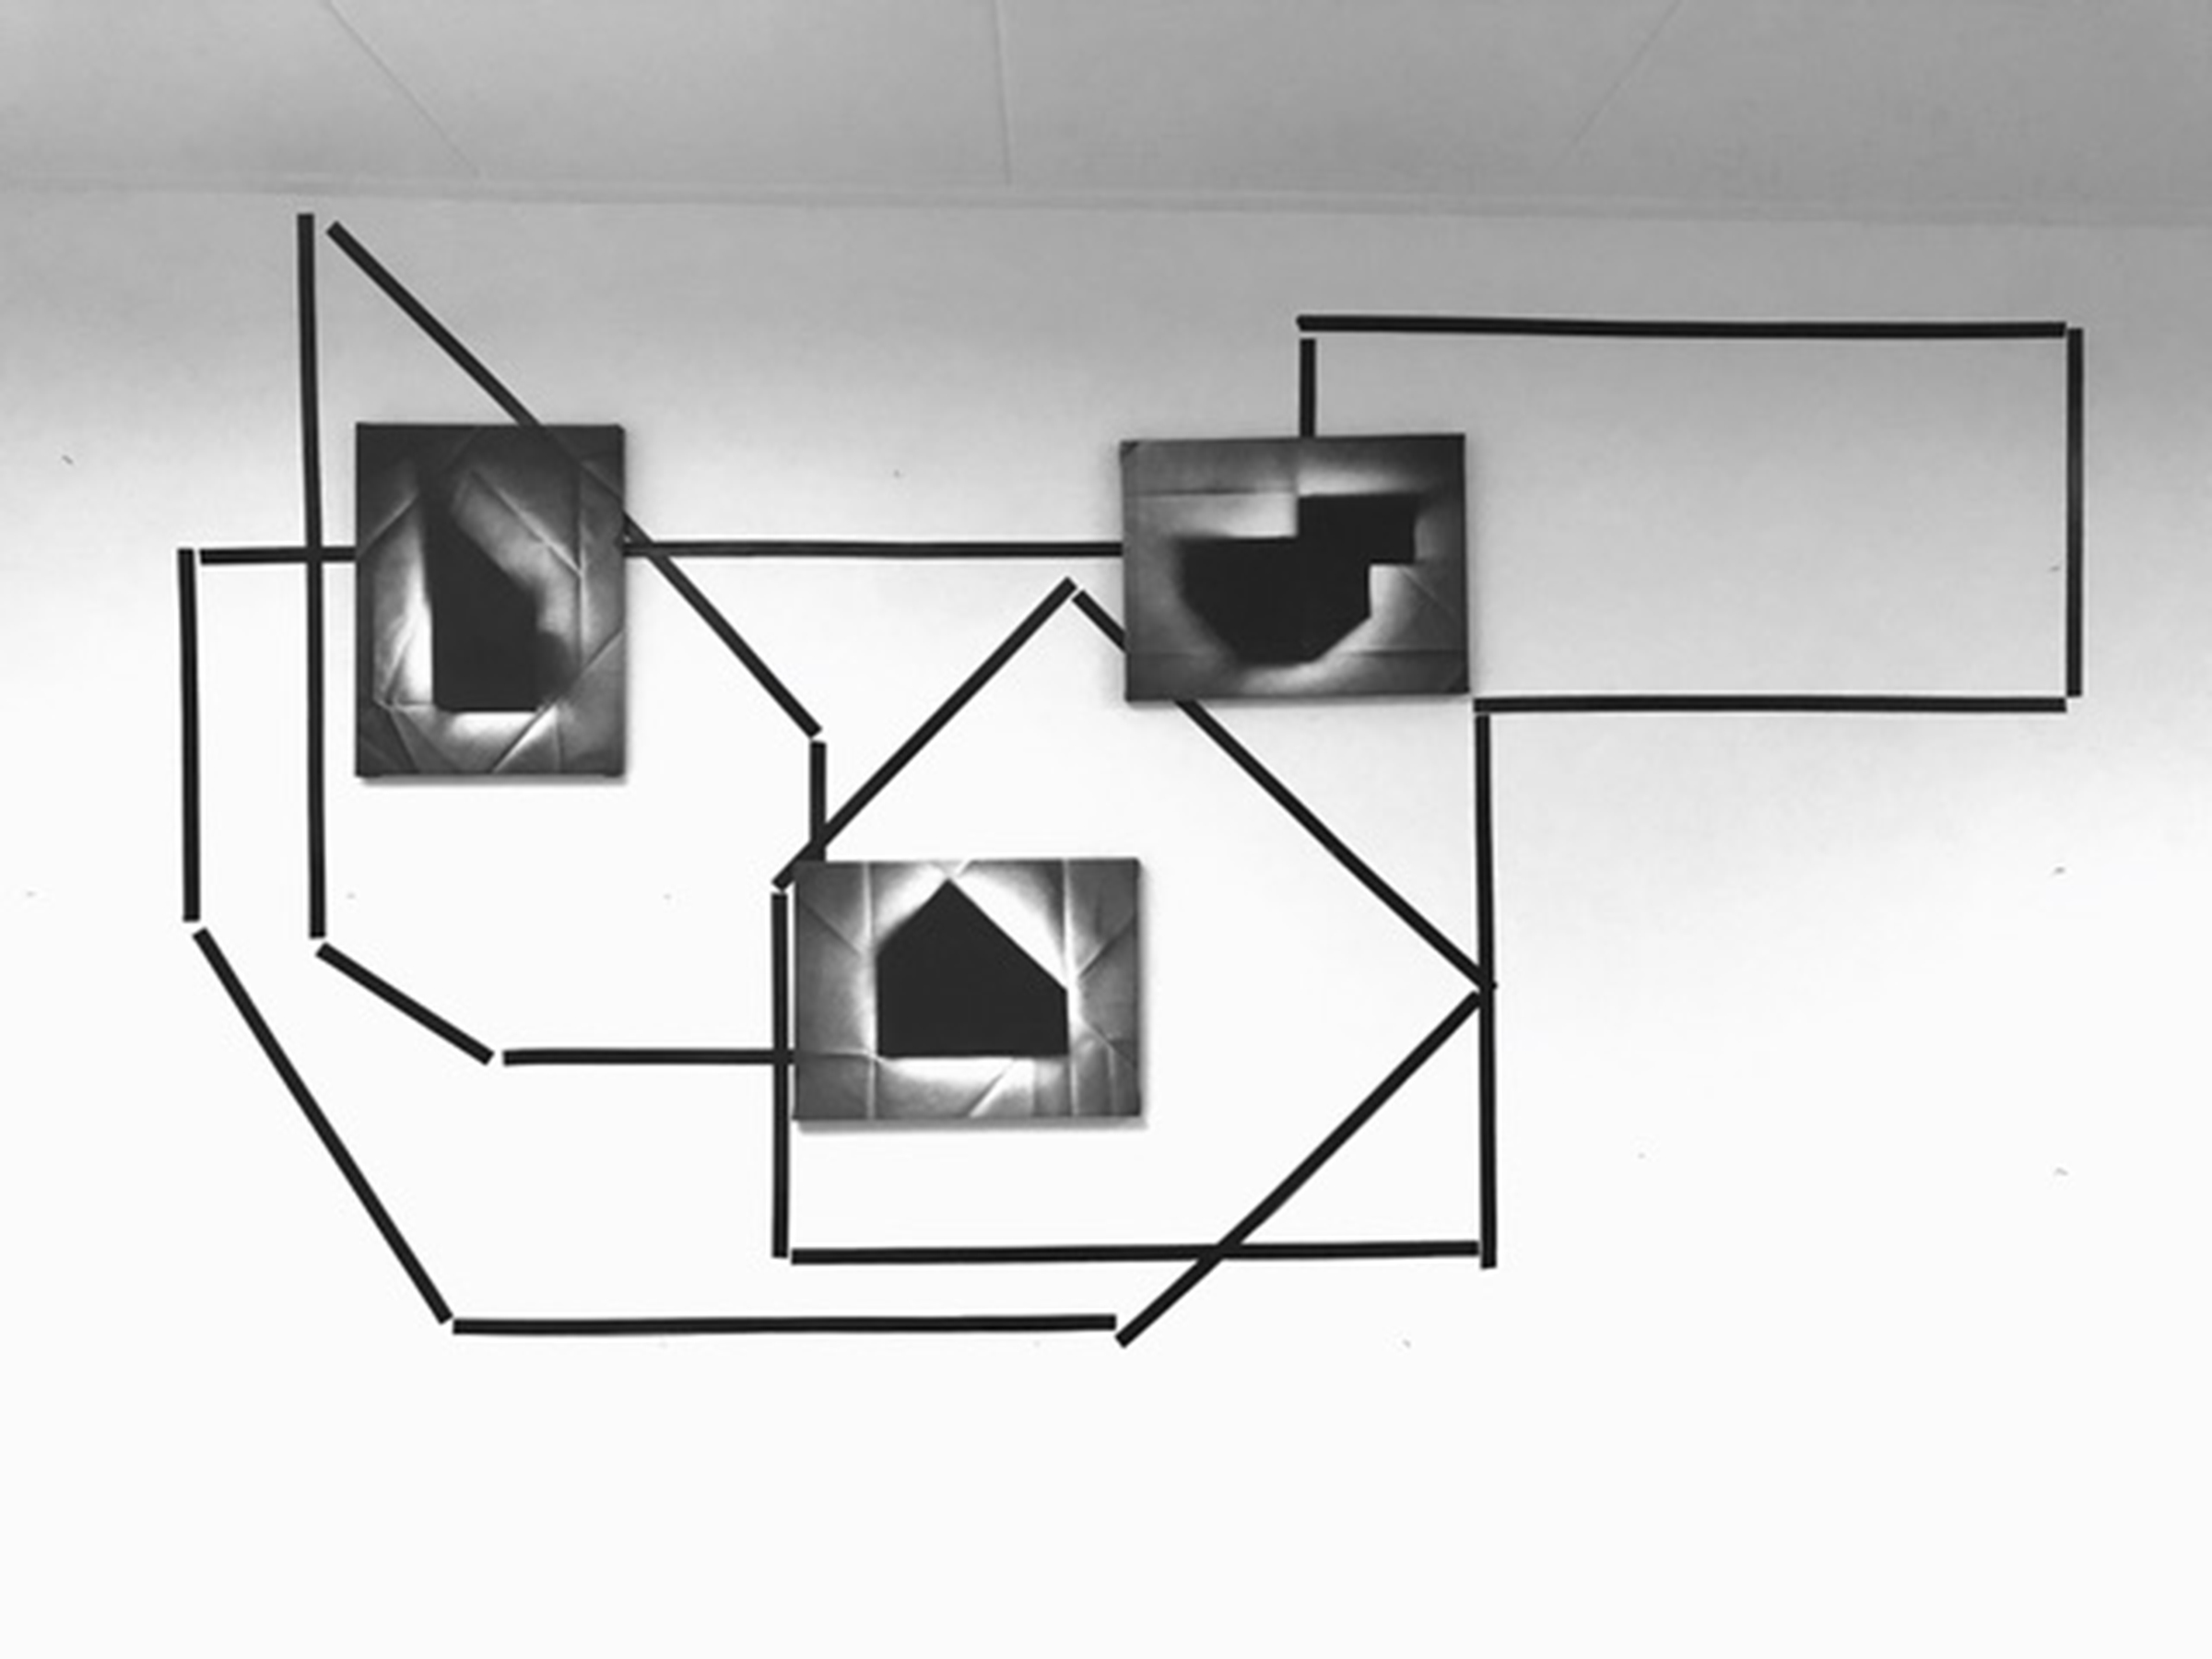 drie geometrische zwart-witte schilderijen hangen op verschillende hoogtes aan de muur over een lijnenspel van zwarte tape